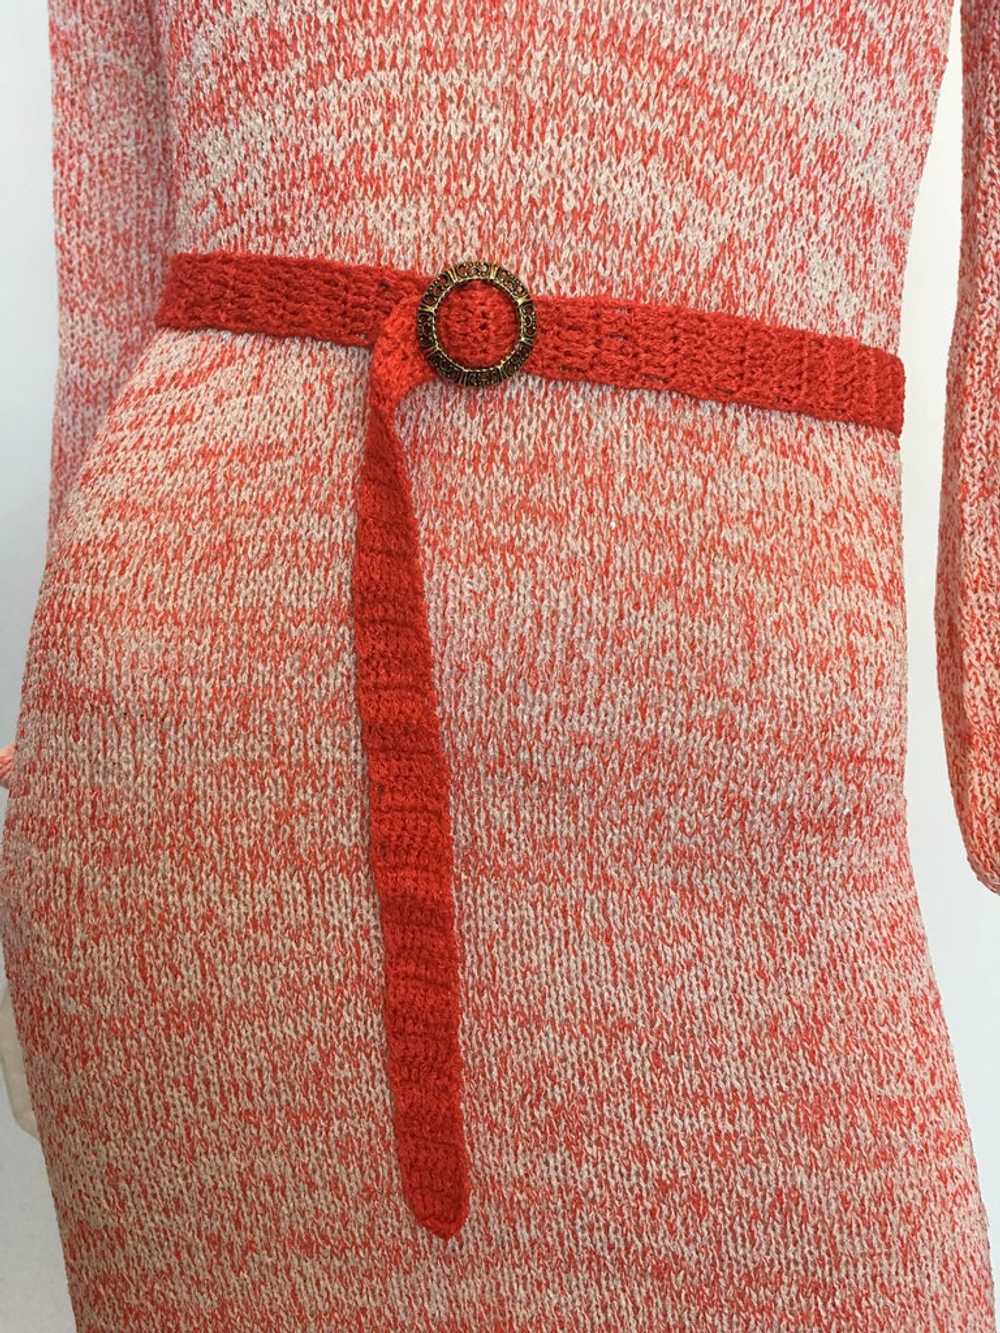 Helga Howie 1970's Knit Space Dye Dress - image 3